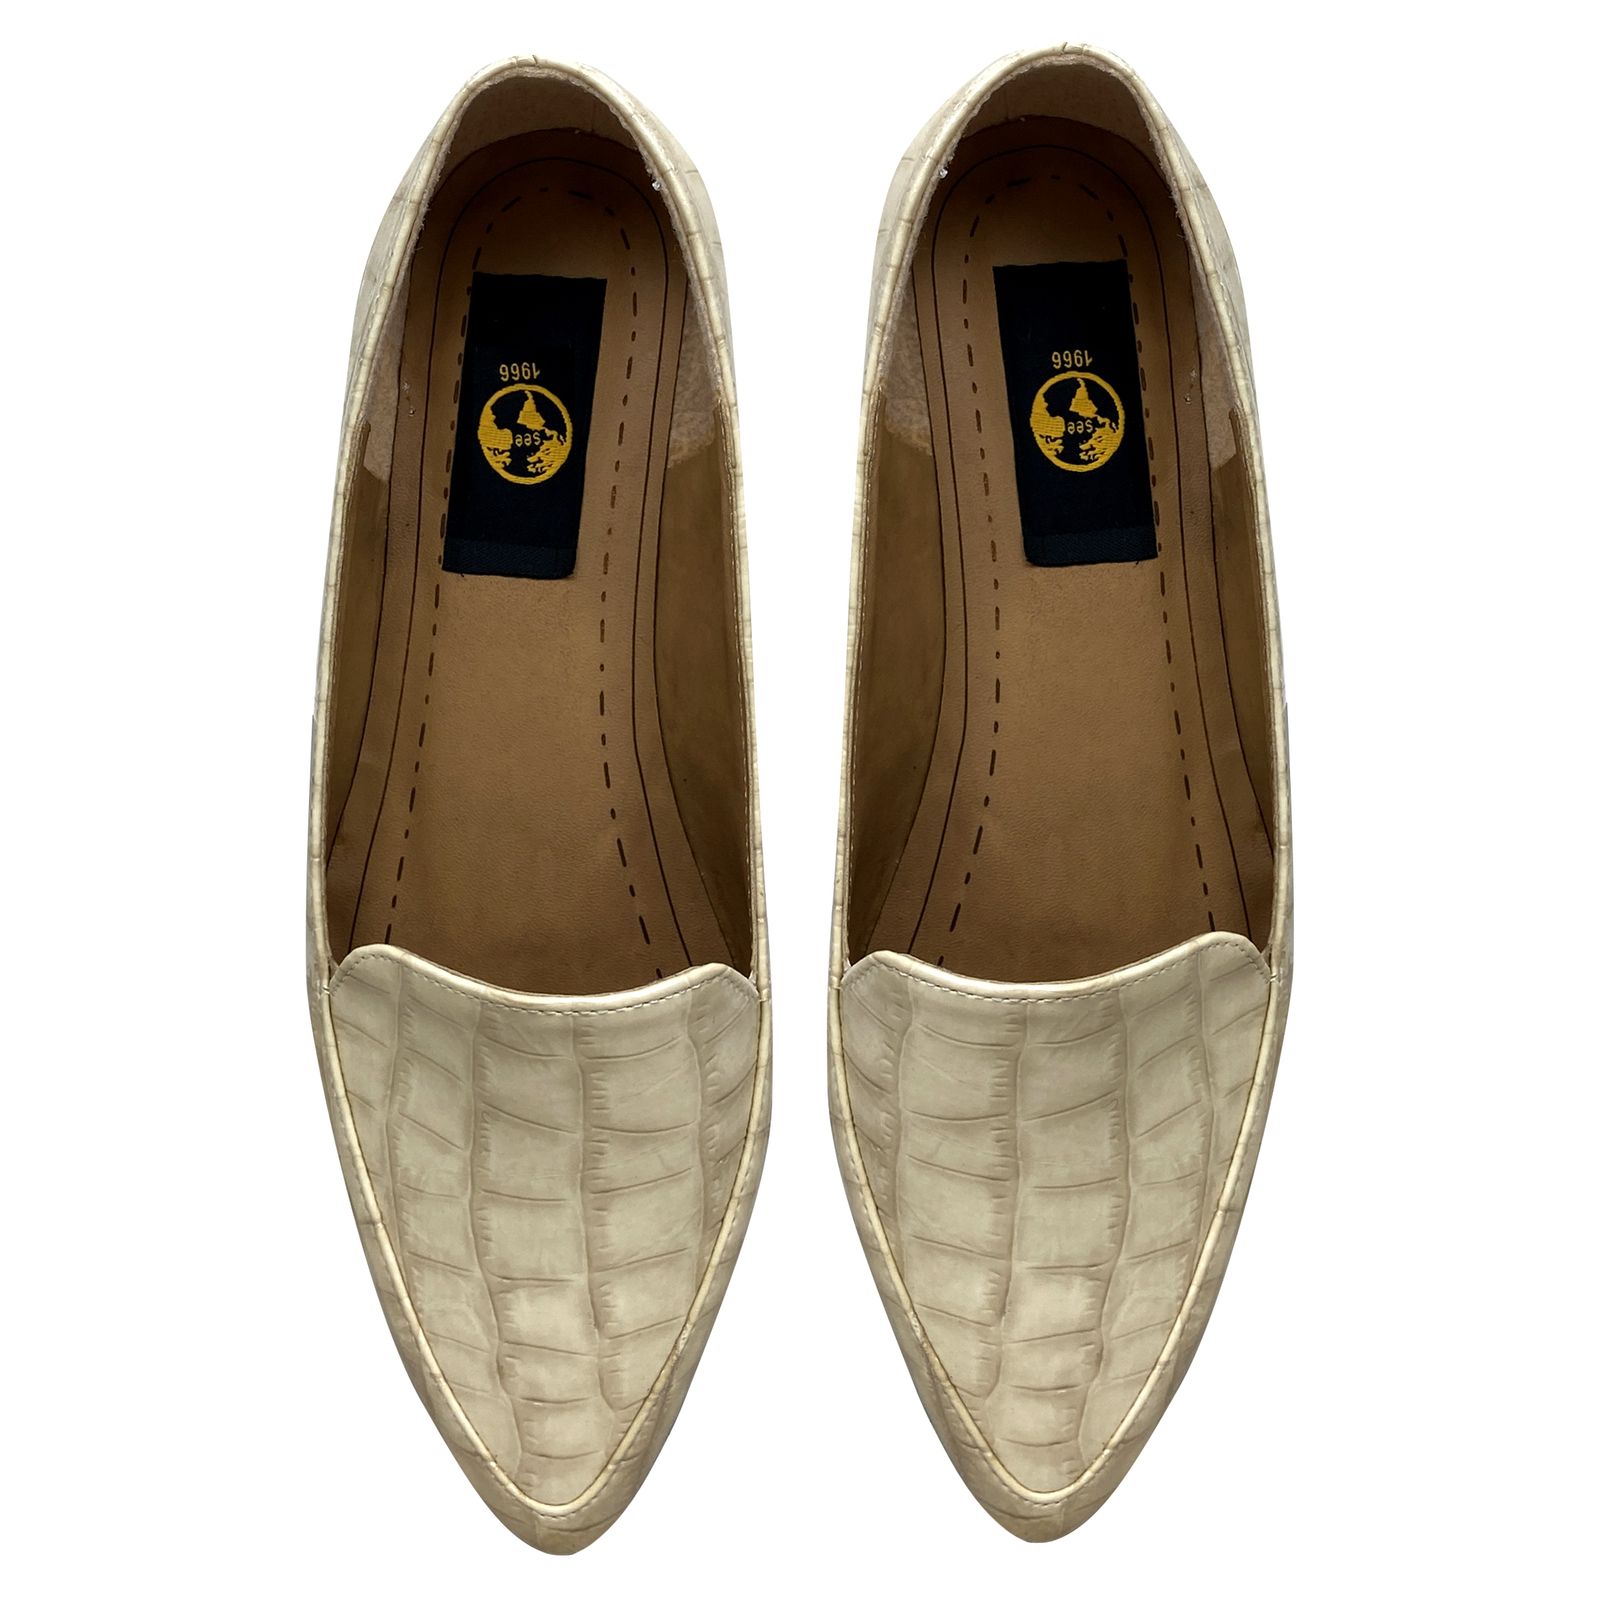 کفش زنانه سیی مدل ملکه پوست ماری کد 1961 -  - 3